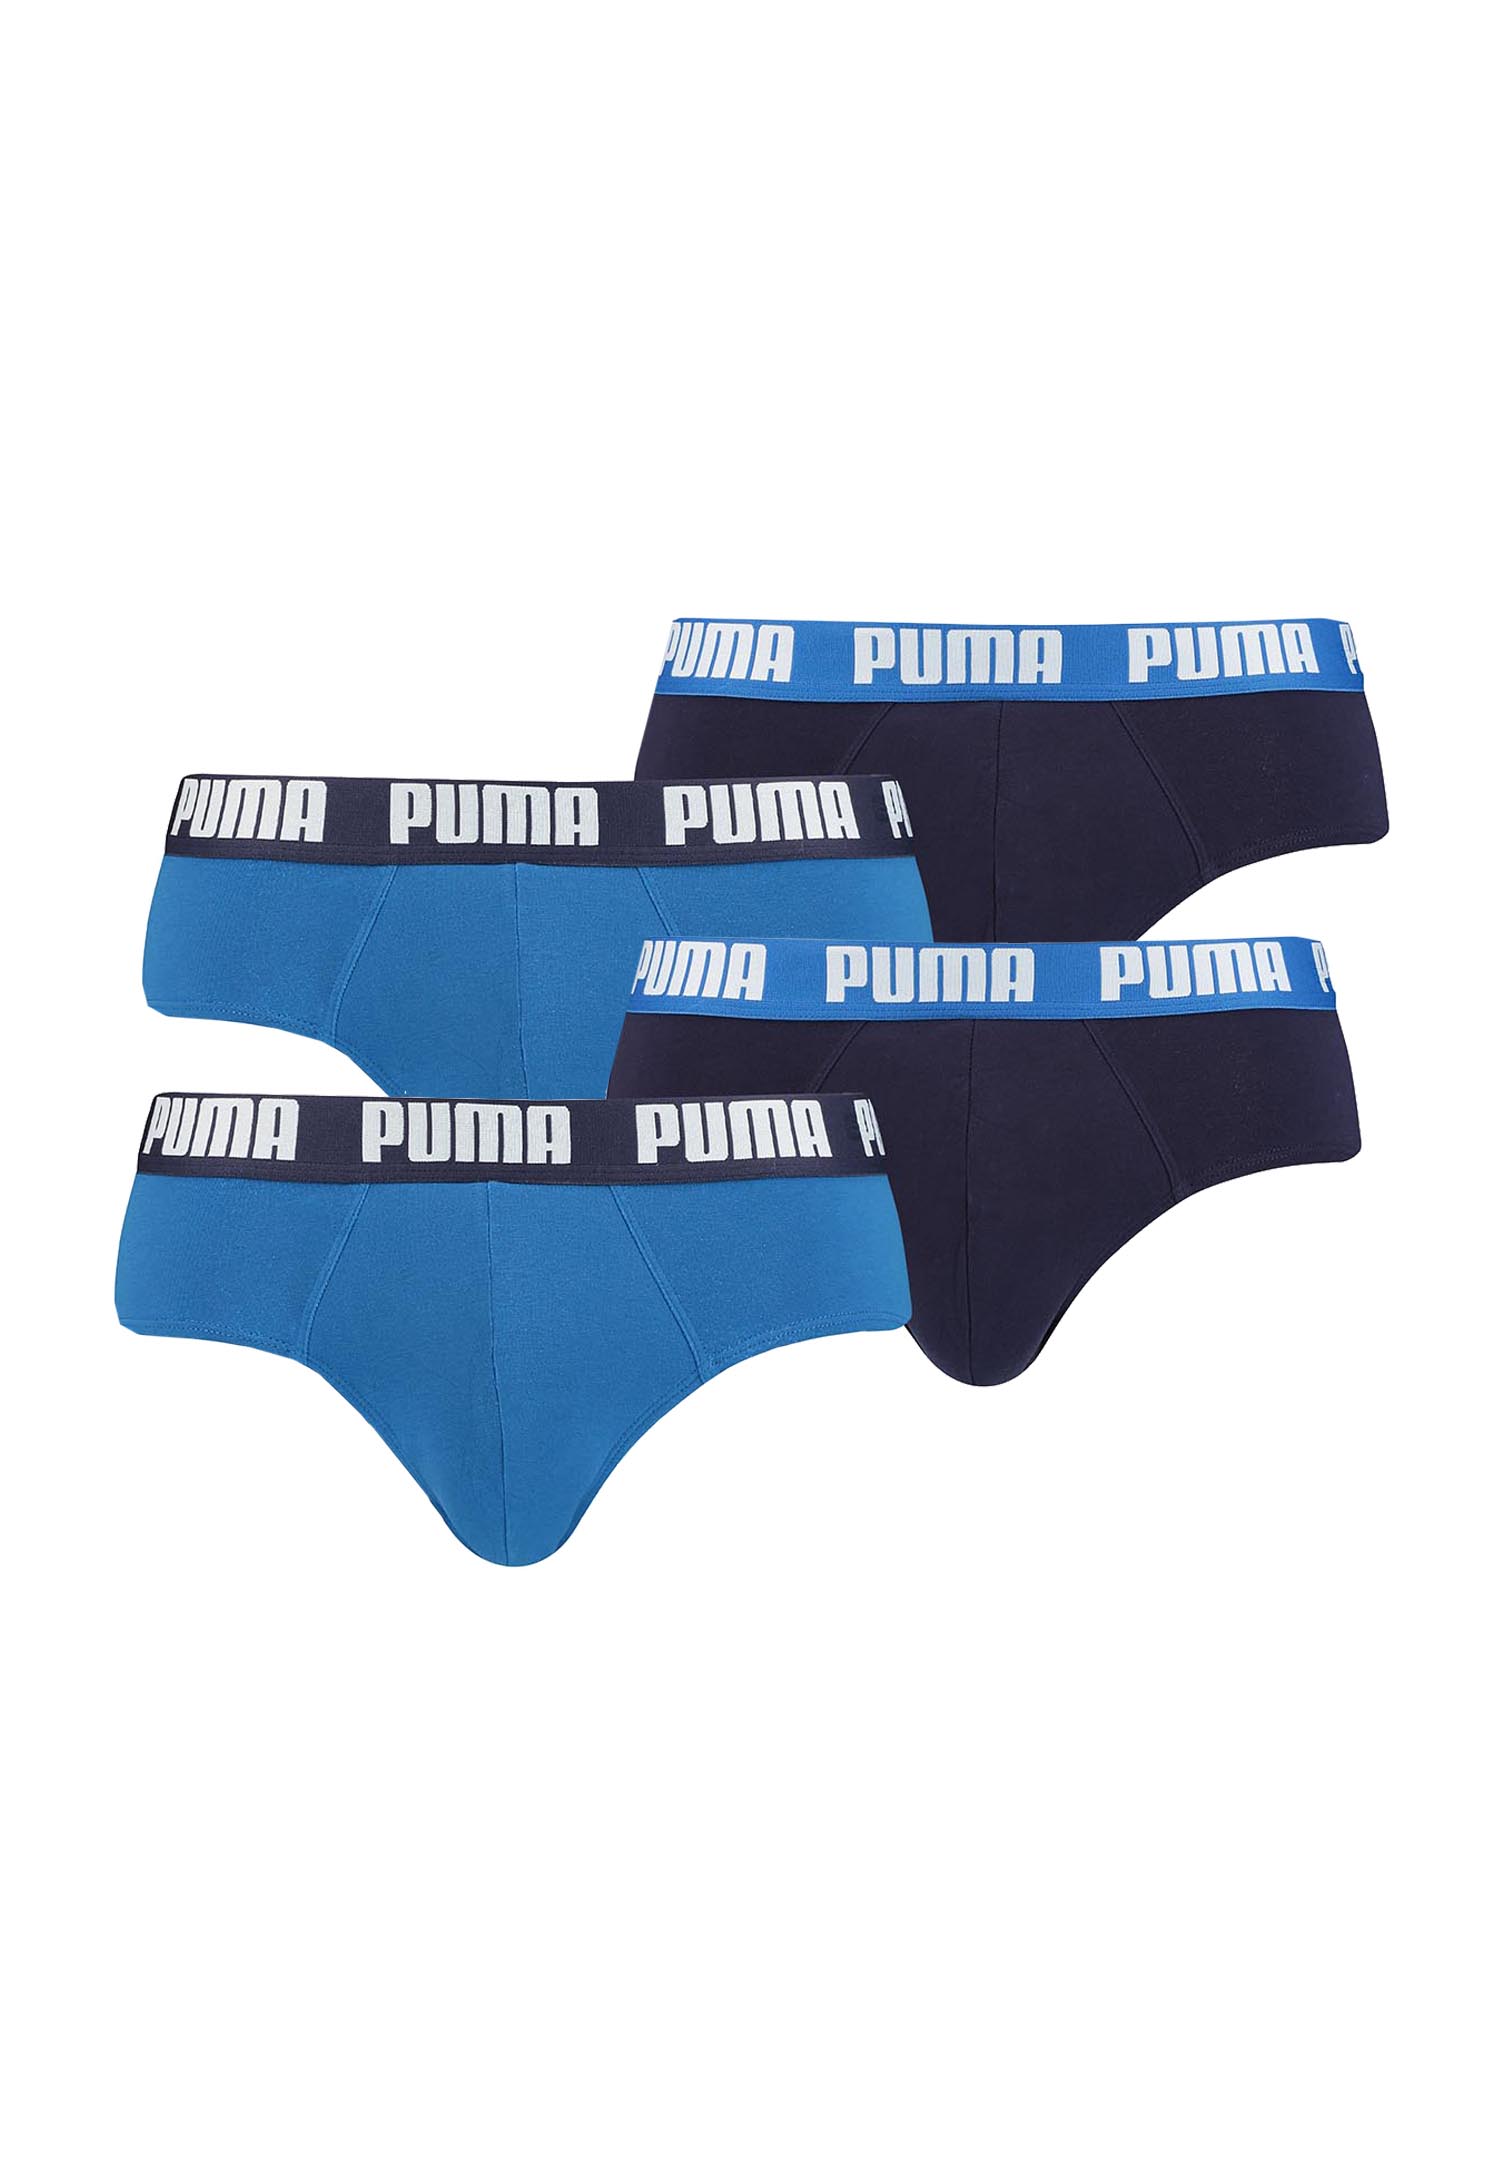 Puma Basic Brief Men Herren Unterhose Pant Unterwäsche 4er Pack